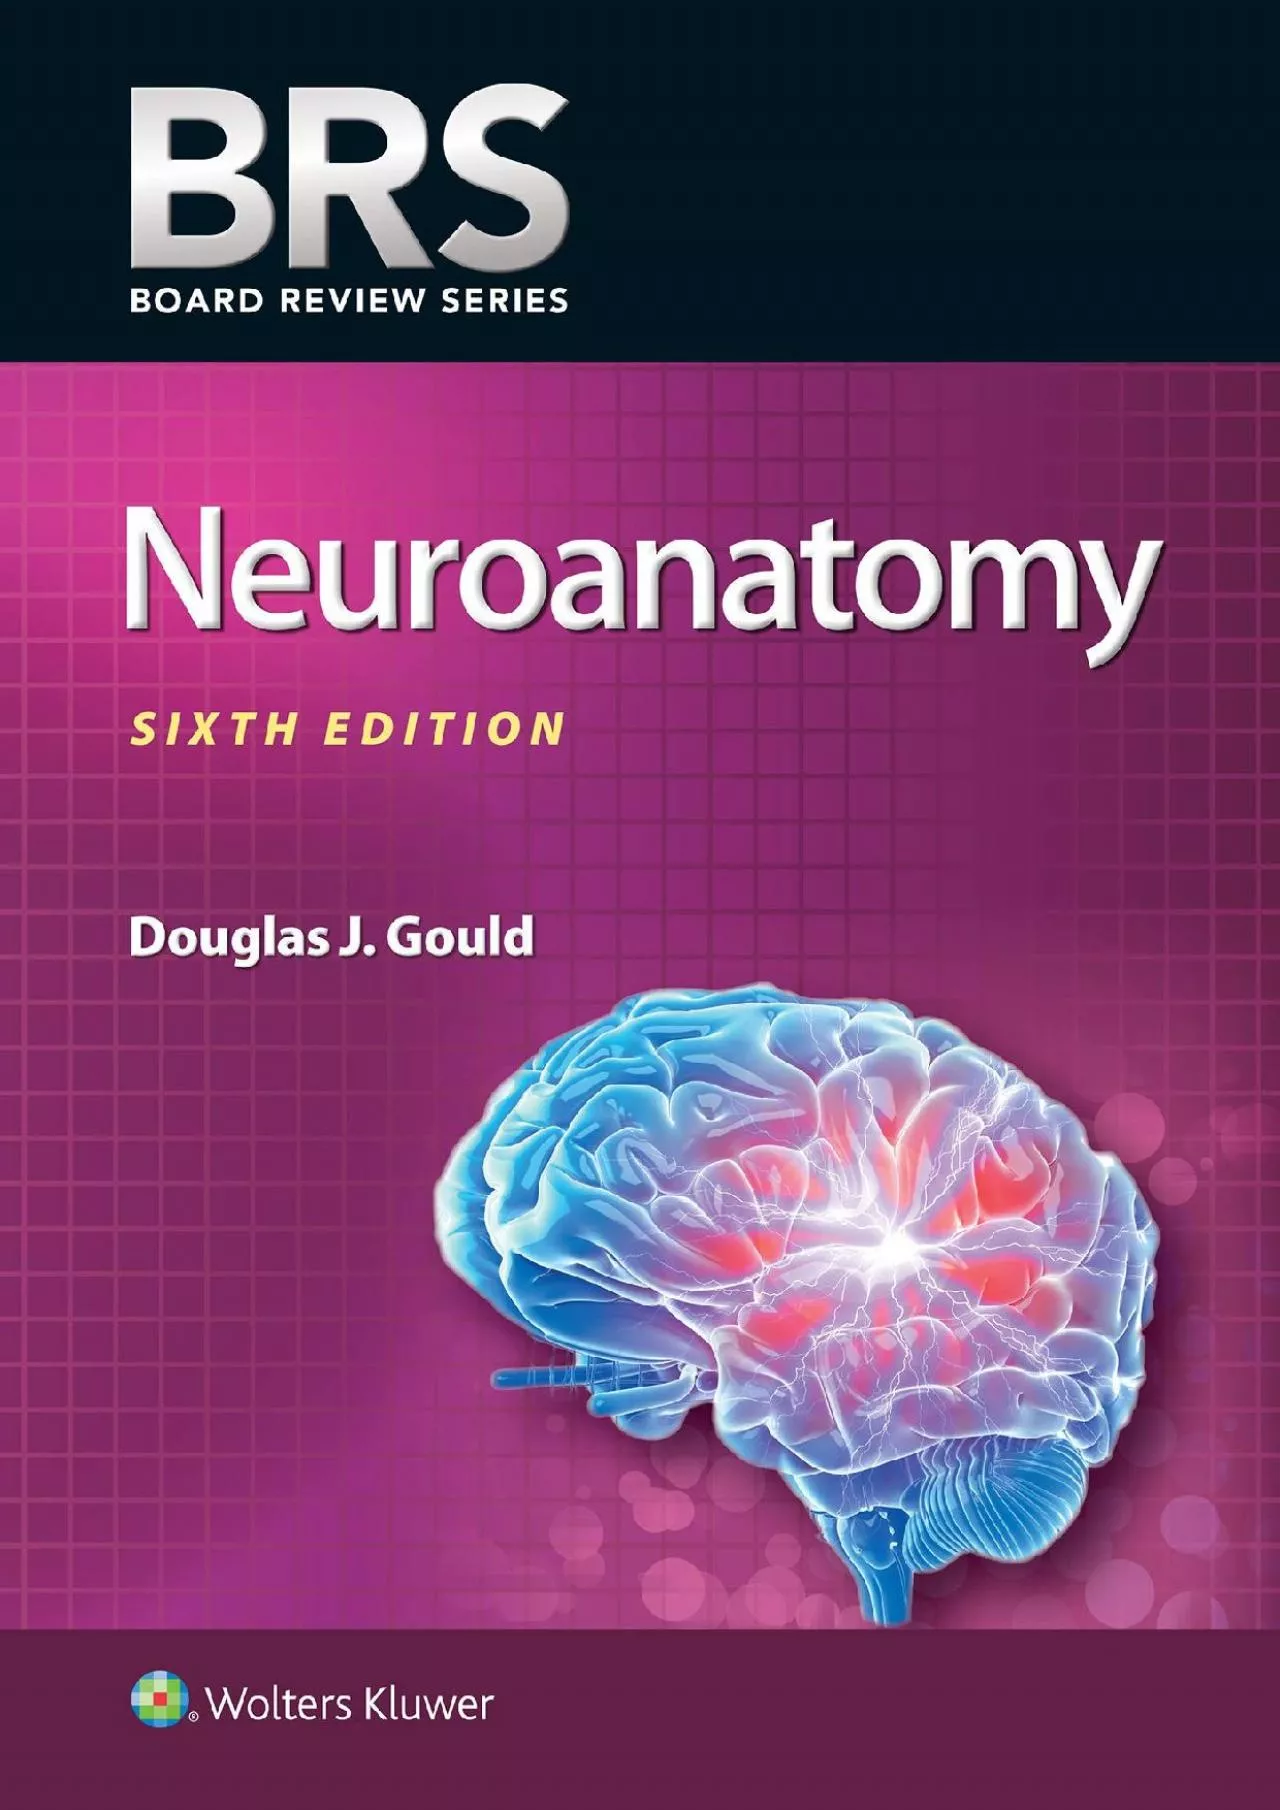 (DOWNLOAD)-BRS Neuroanatomy (Board Review Series)